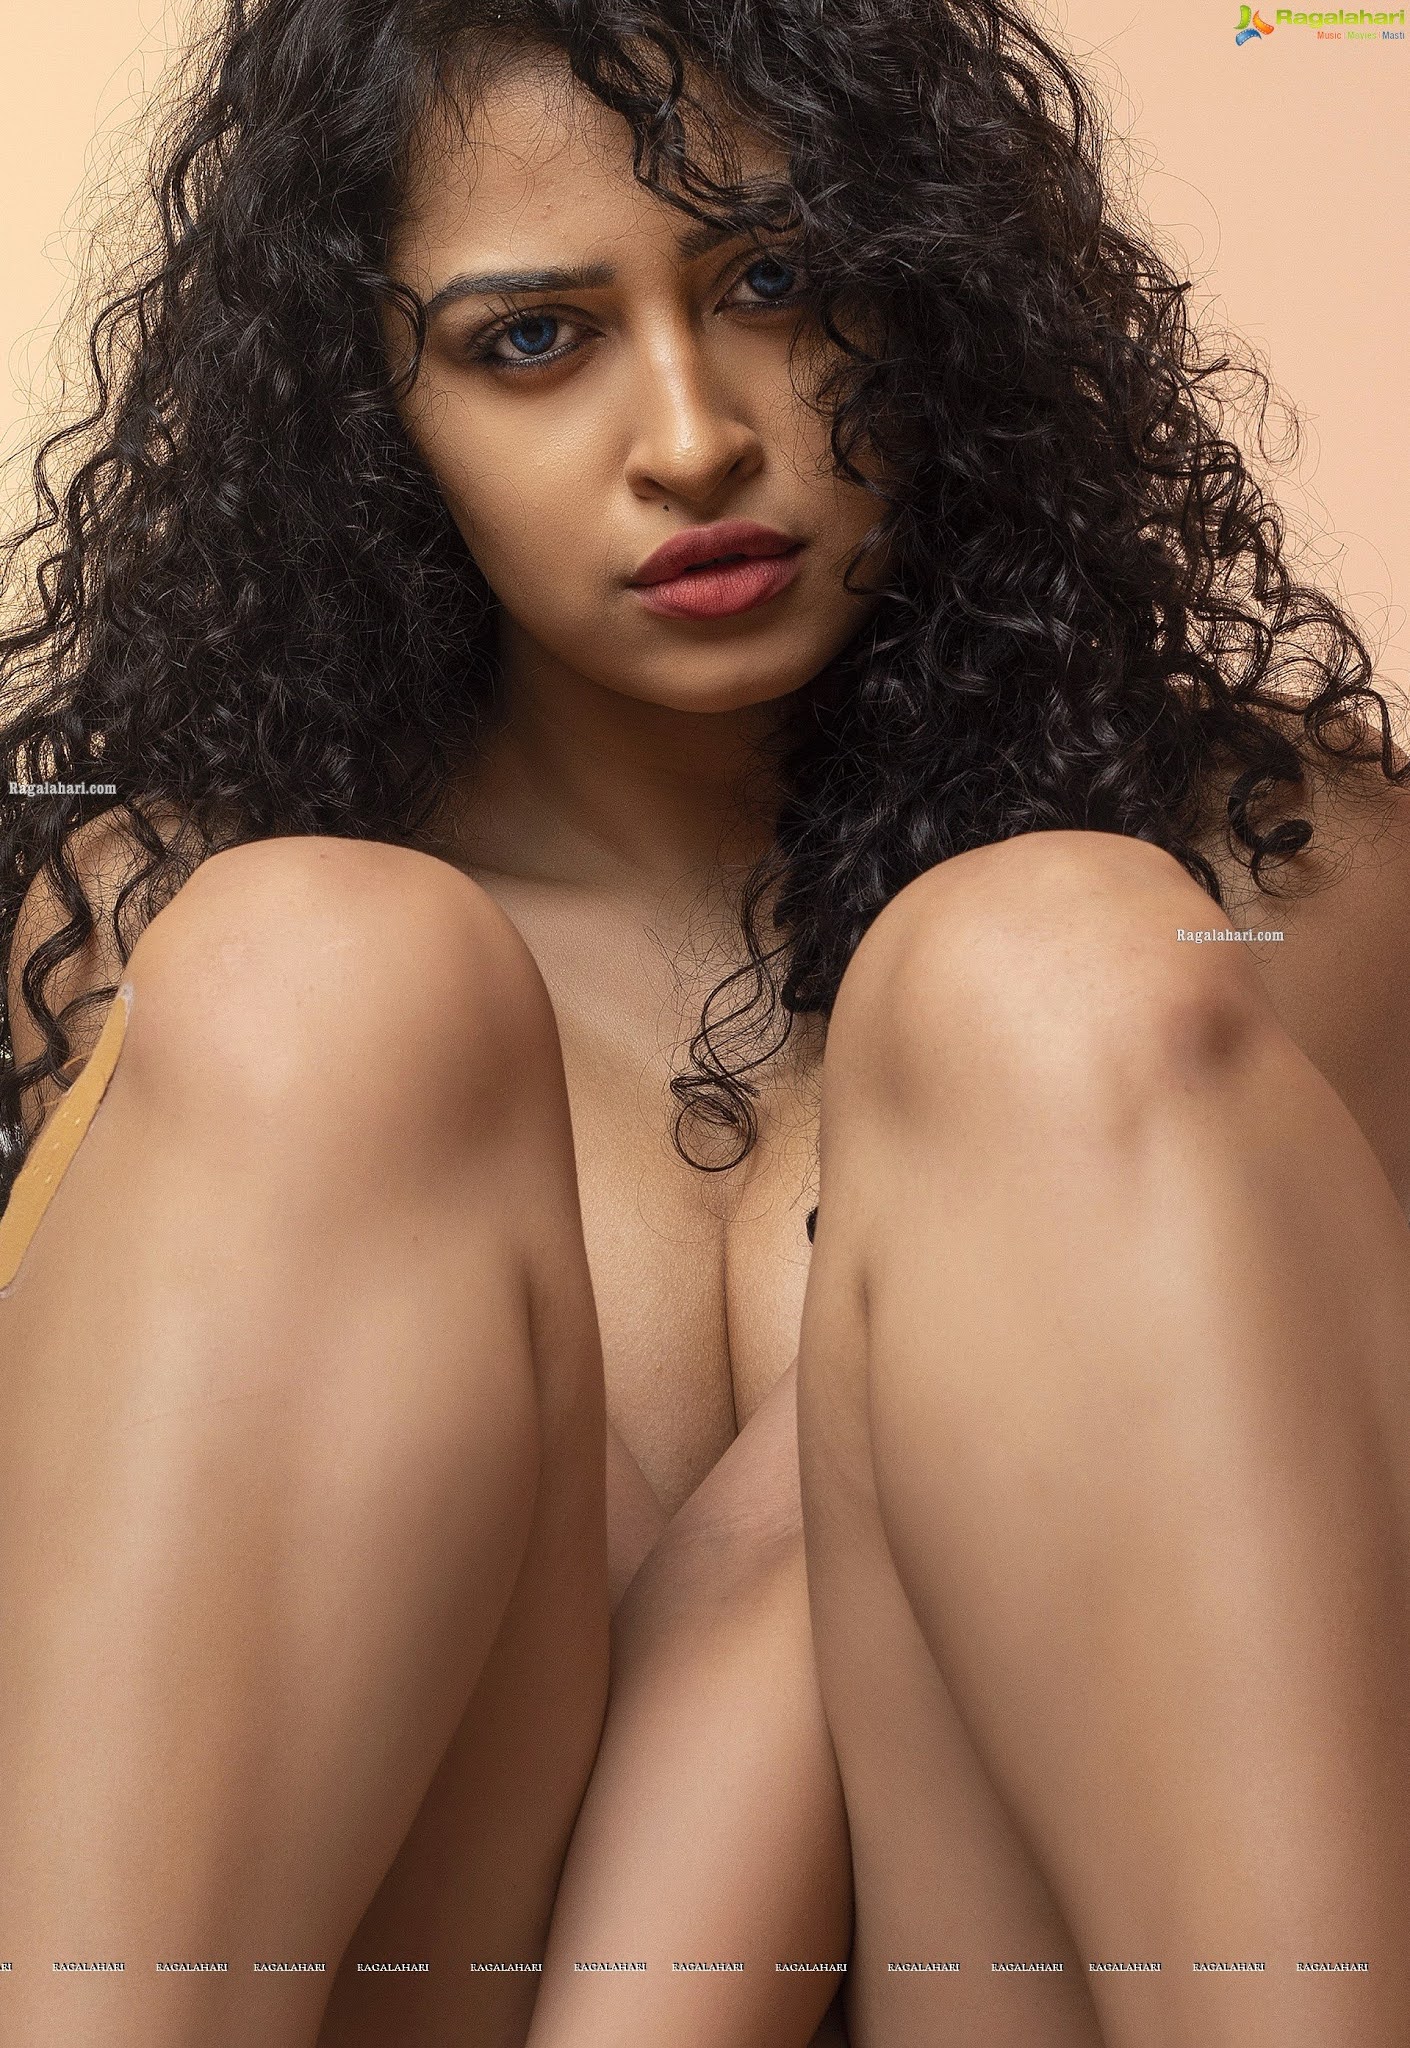 Apsara Sex - RGV's Dangerous Actress Apsara Rani Hot Photos